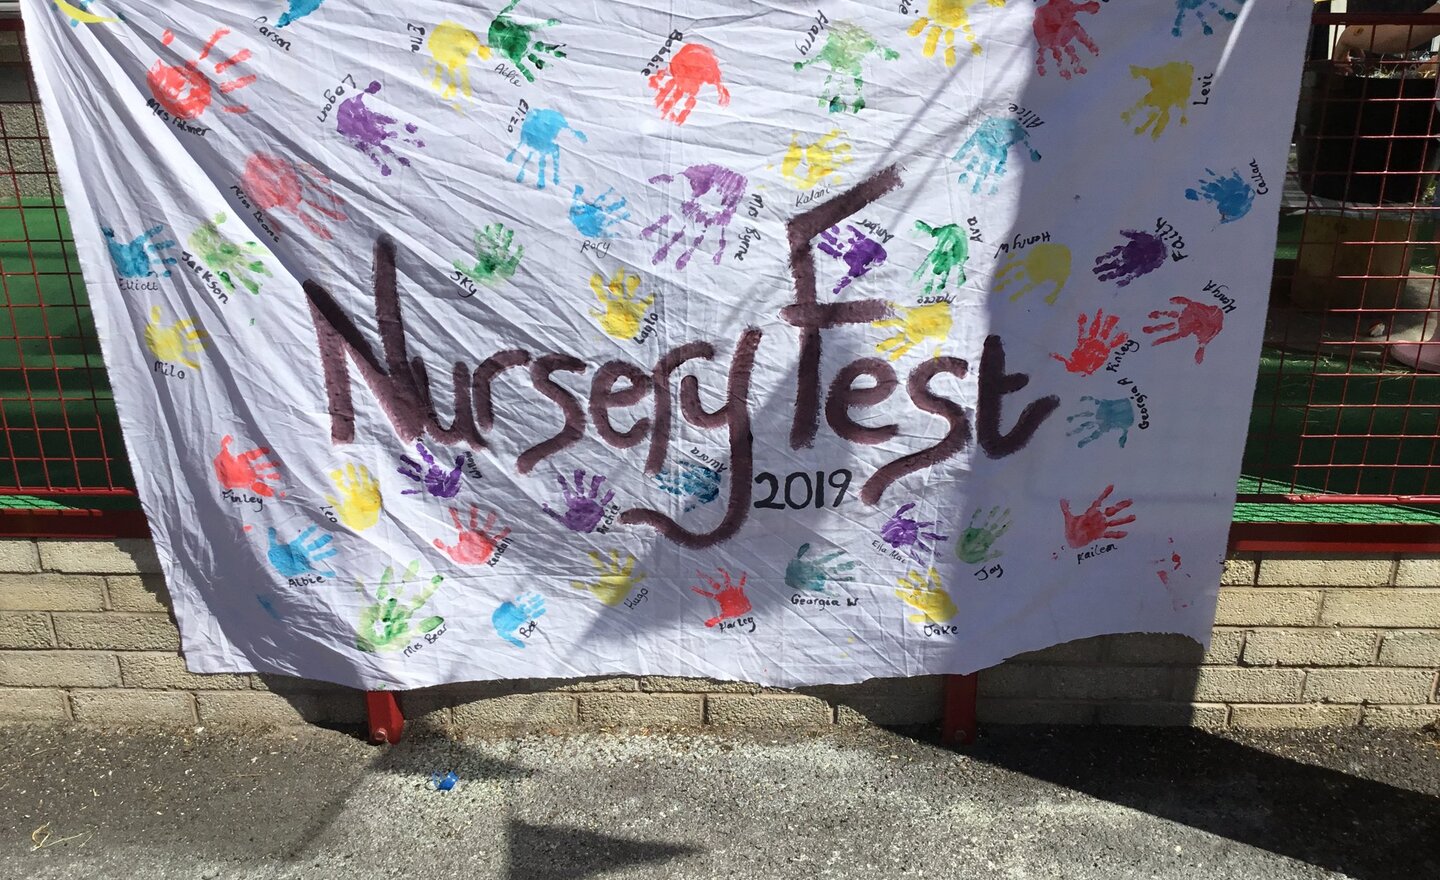 Image of Nursery Fest 2019